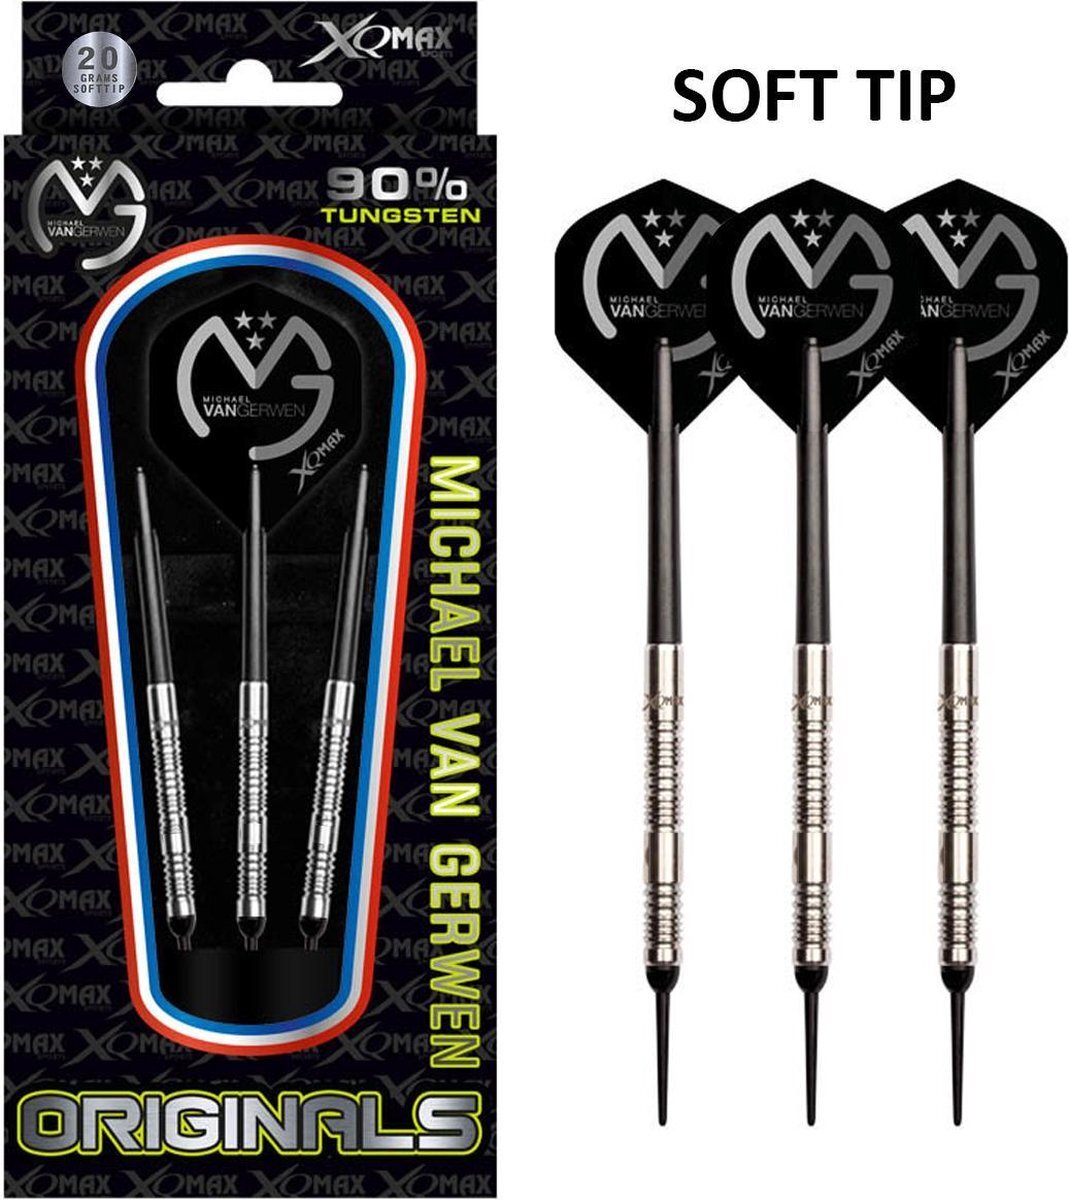 XQmax Darts Michael van Gerwen - softtip dartpijlen - 20 gram - 90% tungsten - dartpijlen - darts